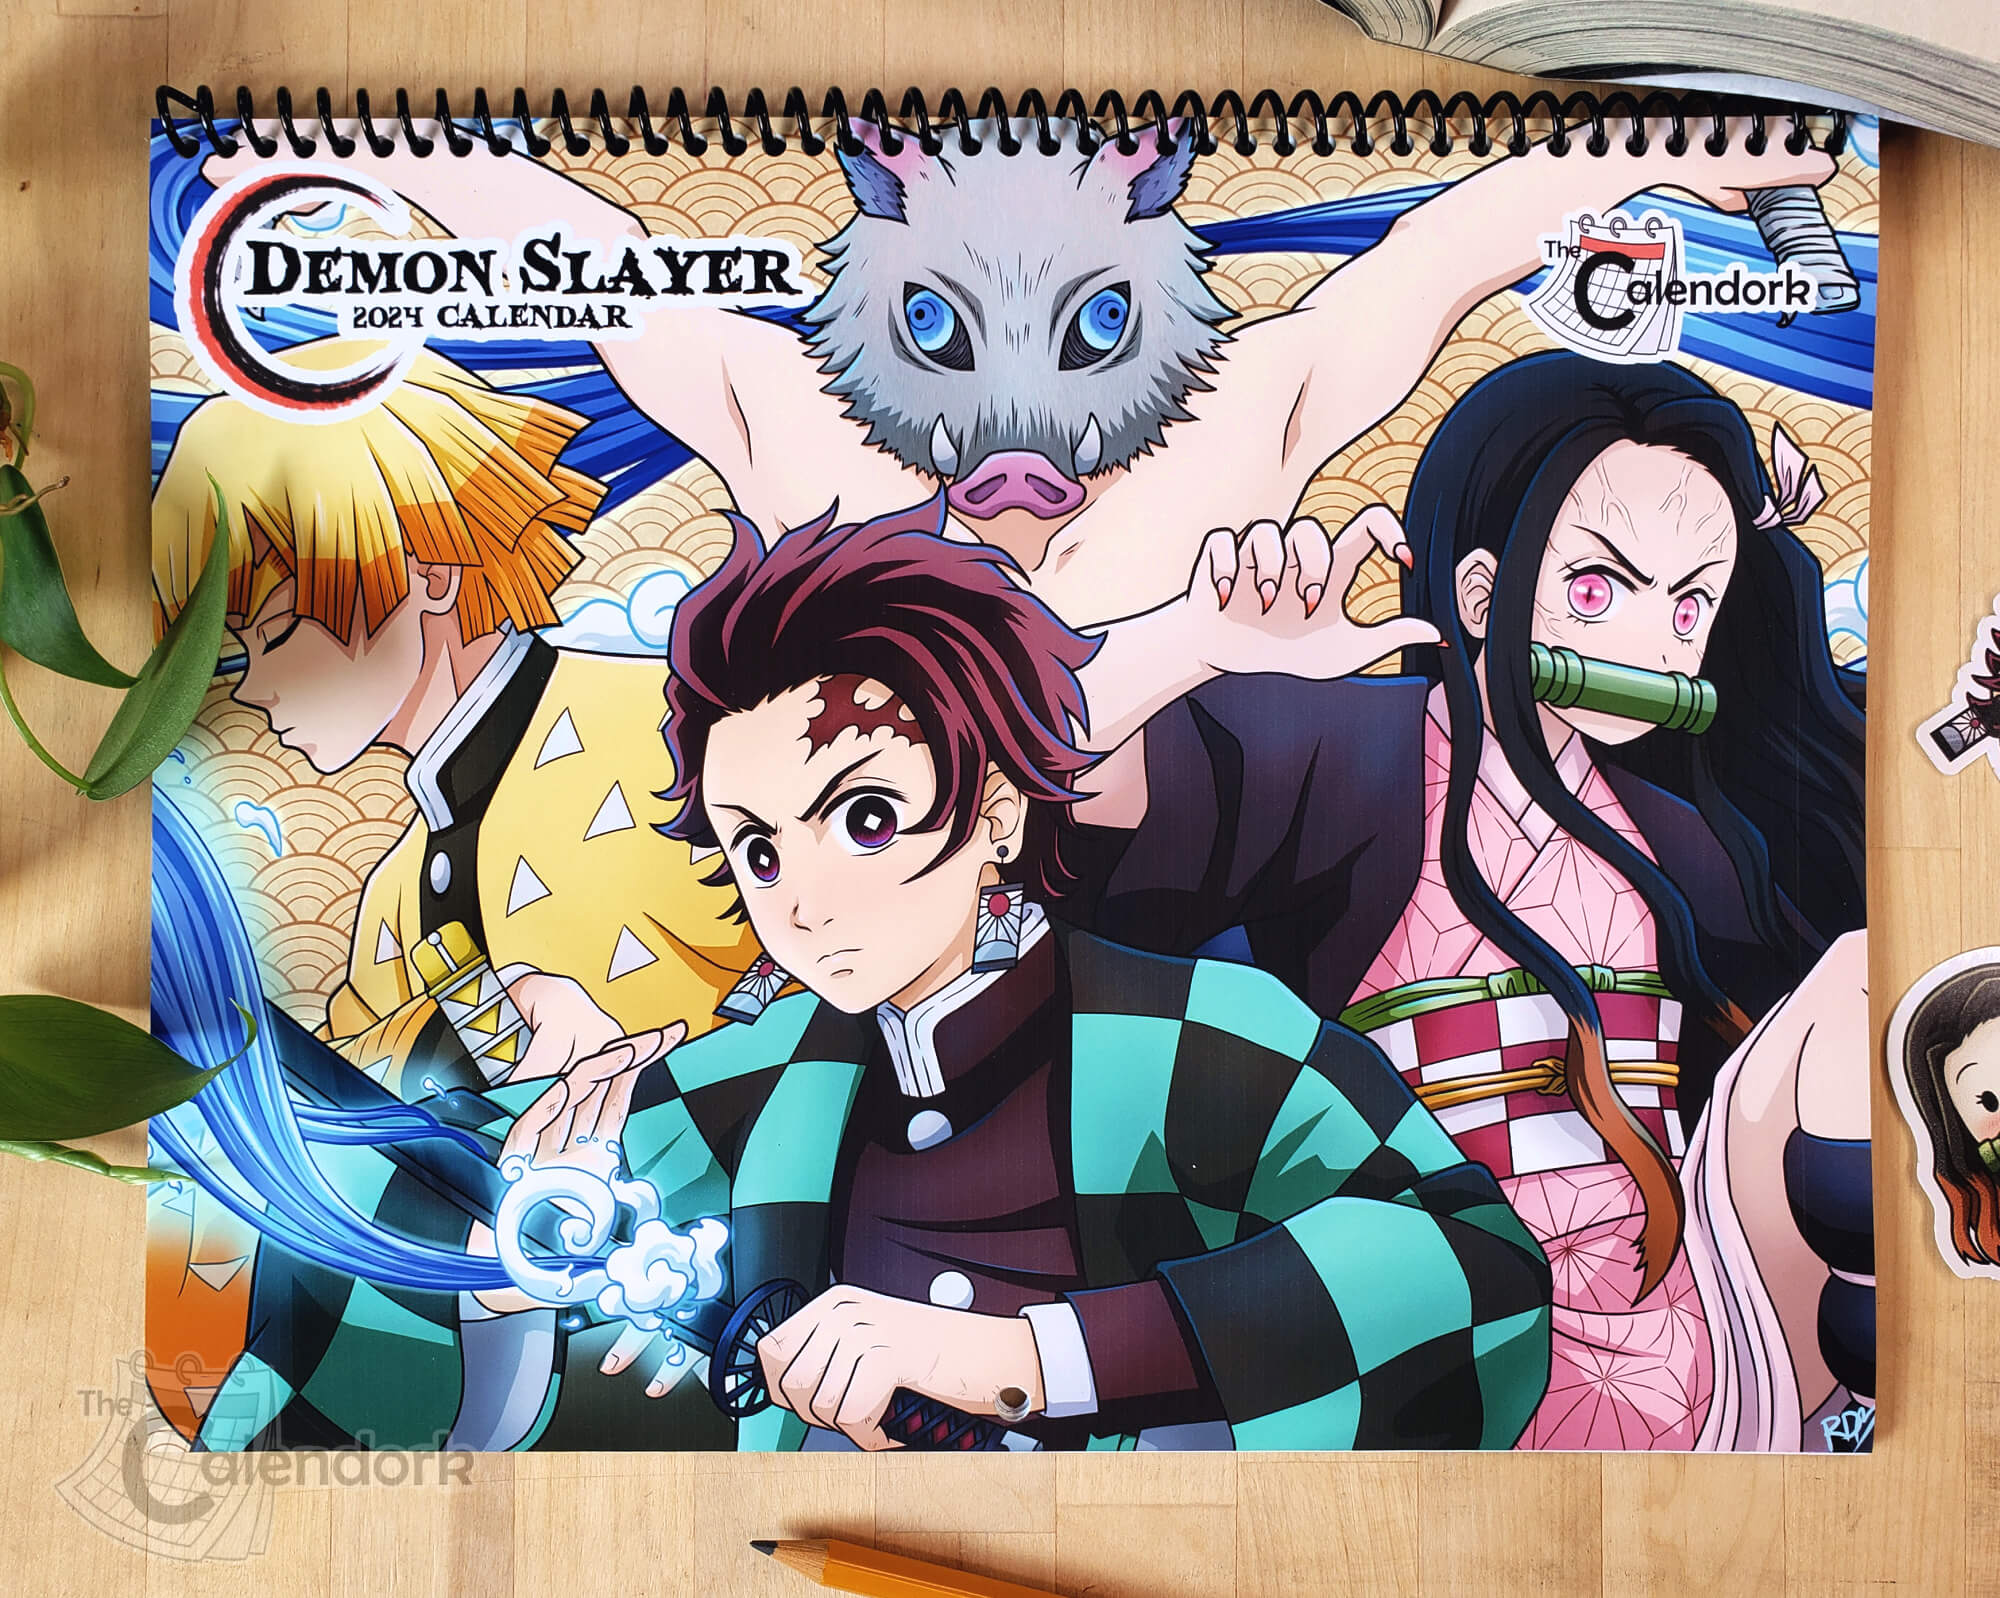 Able Demon Slayer Anime Calendar 2022 – All About Anime and Manga